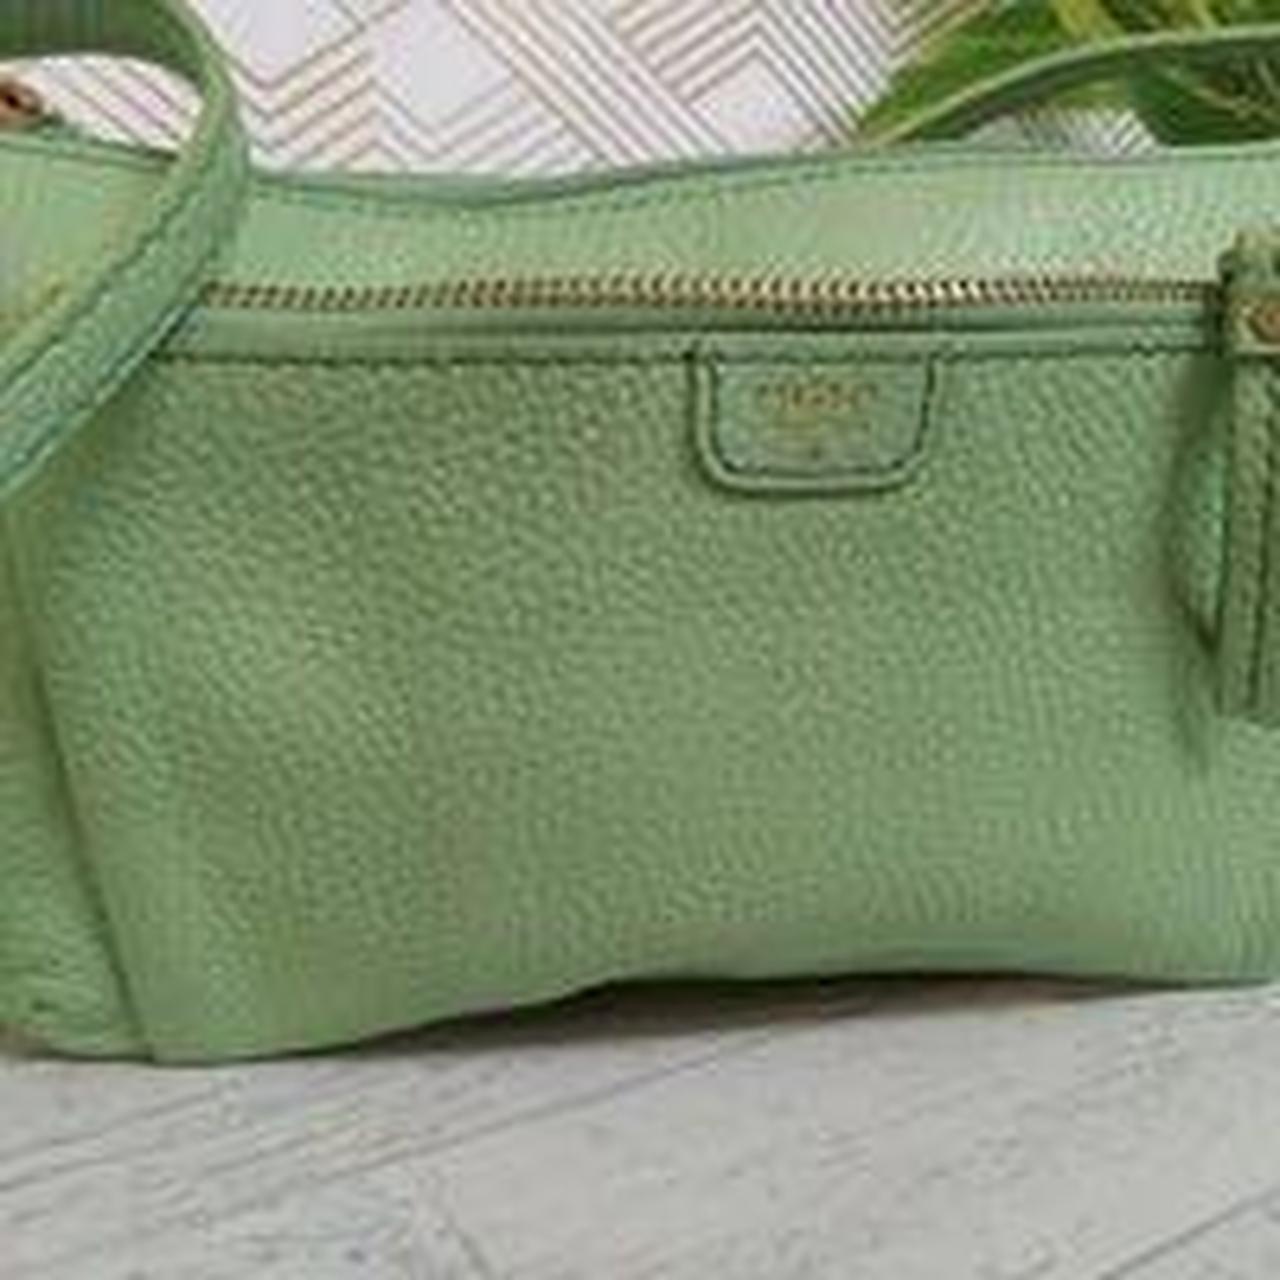 FOSSIL olive green canvas messenger bag - vintaya.com